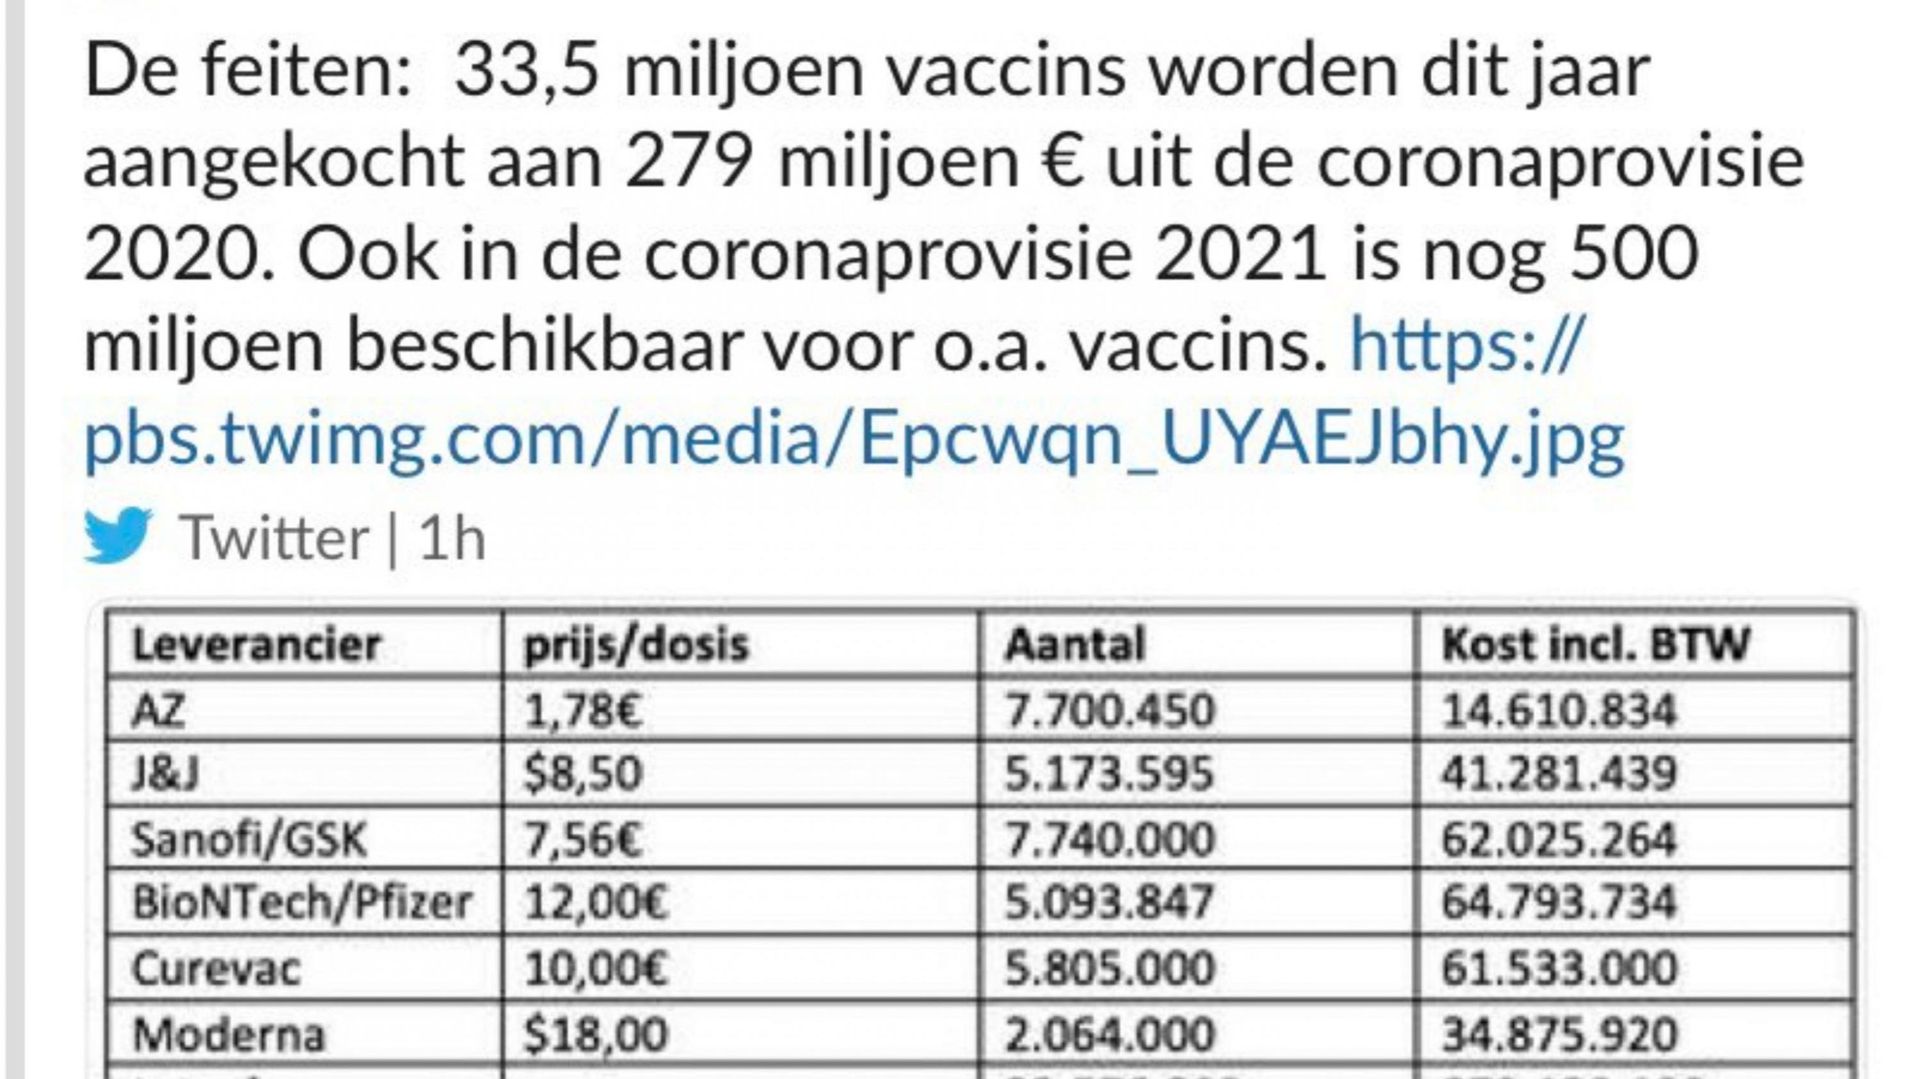 "Les prix des vaccins sont confidentiels, dans l’intérêt de tous" insiste la Commission européenne